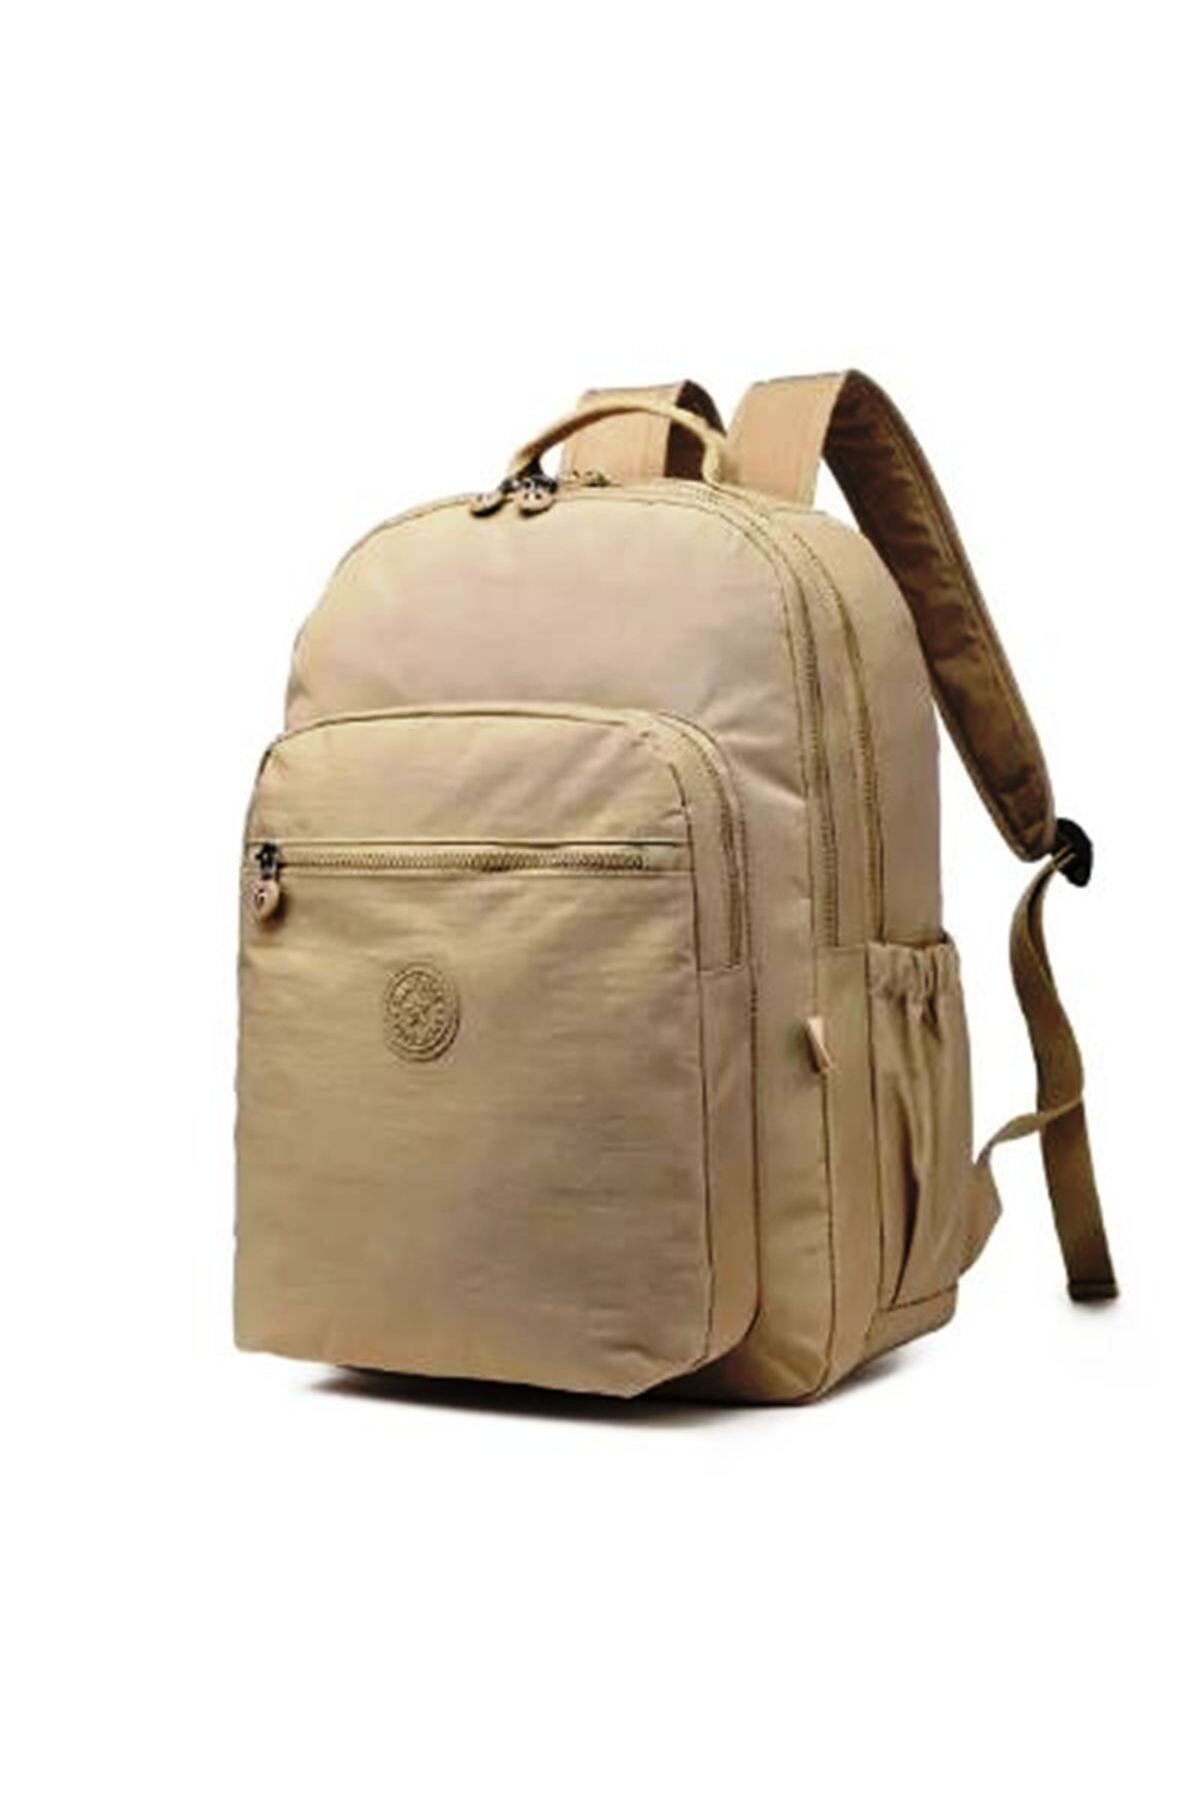 Smart Bags Büyük Boy Krinkıl Kumaş Sırt Çantası 3209-0015 VİZON